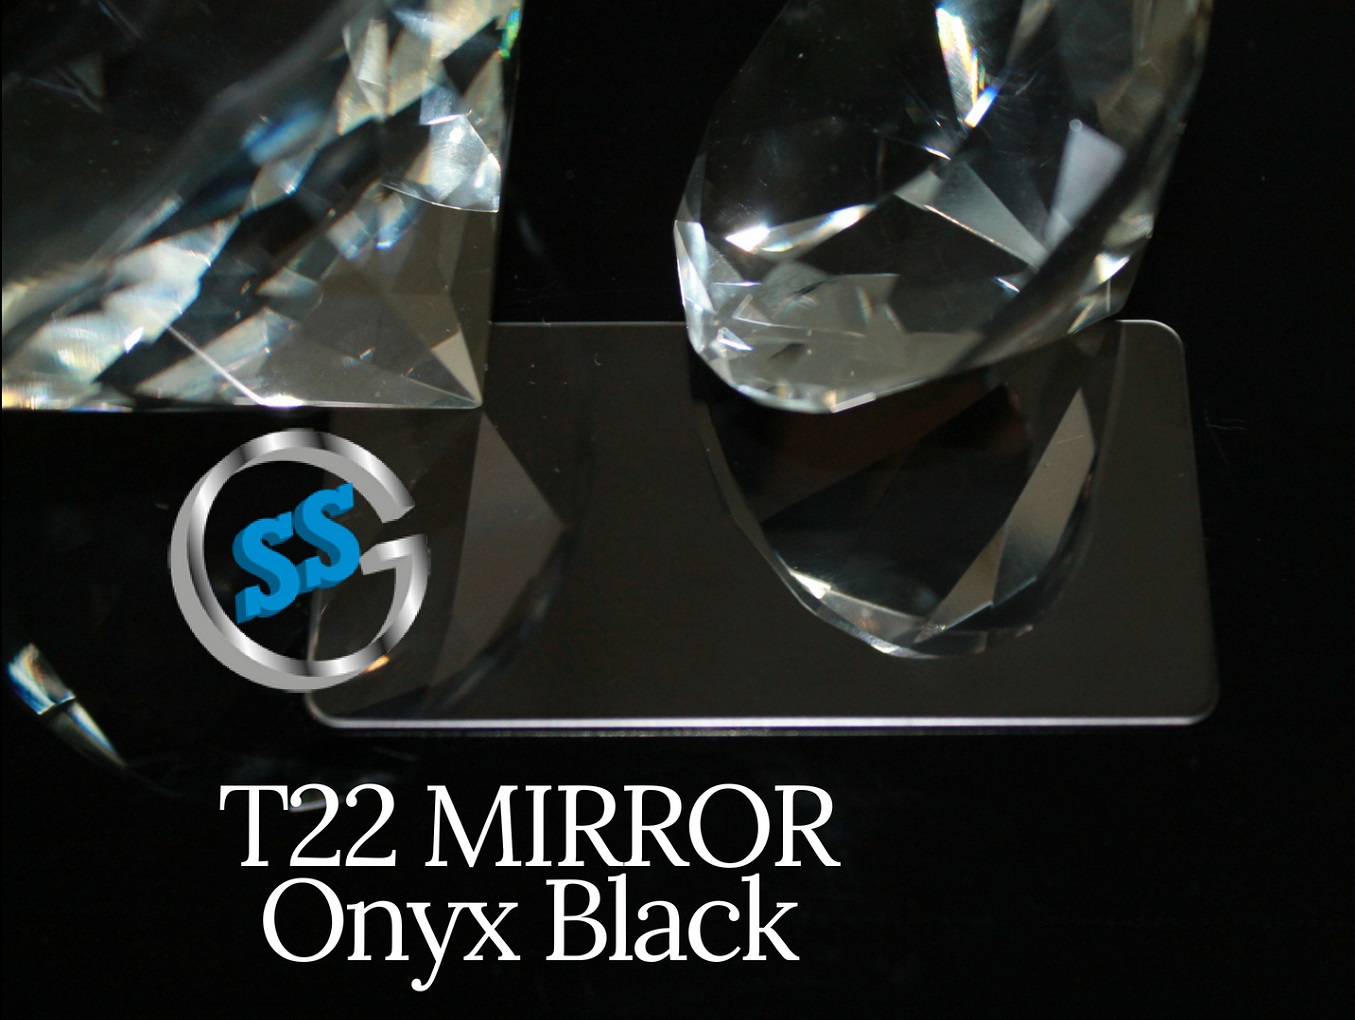 Inox T22 Titanium Onyx Black Mirror, inox colorato titanio nero a specchio